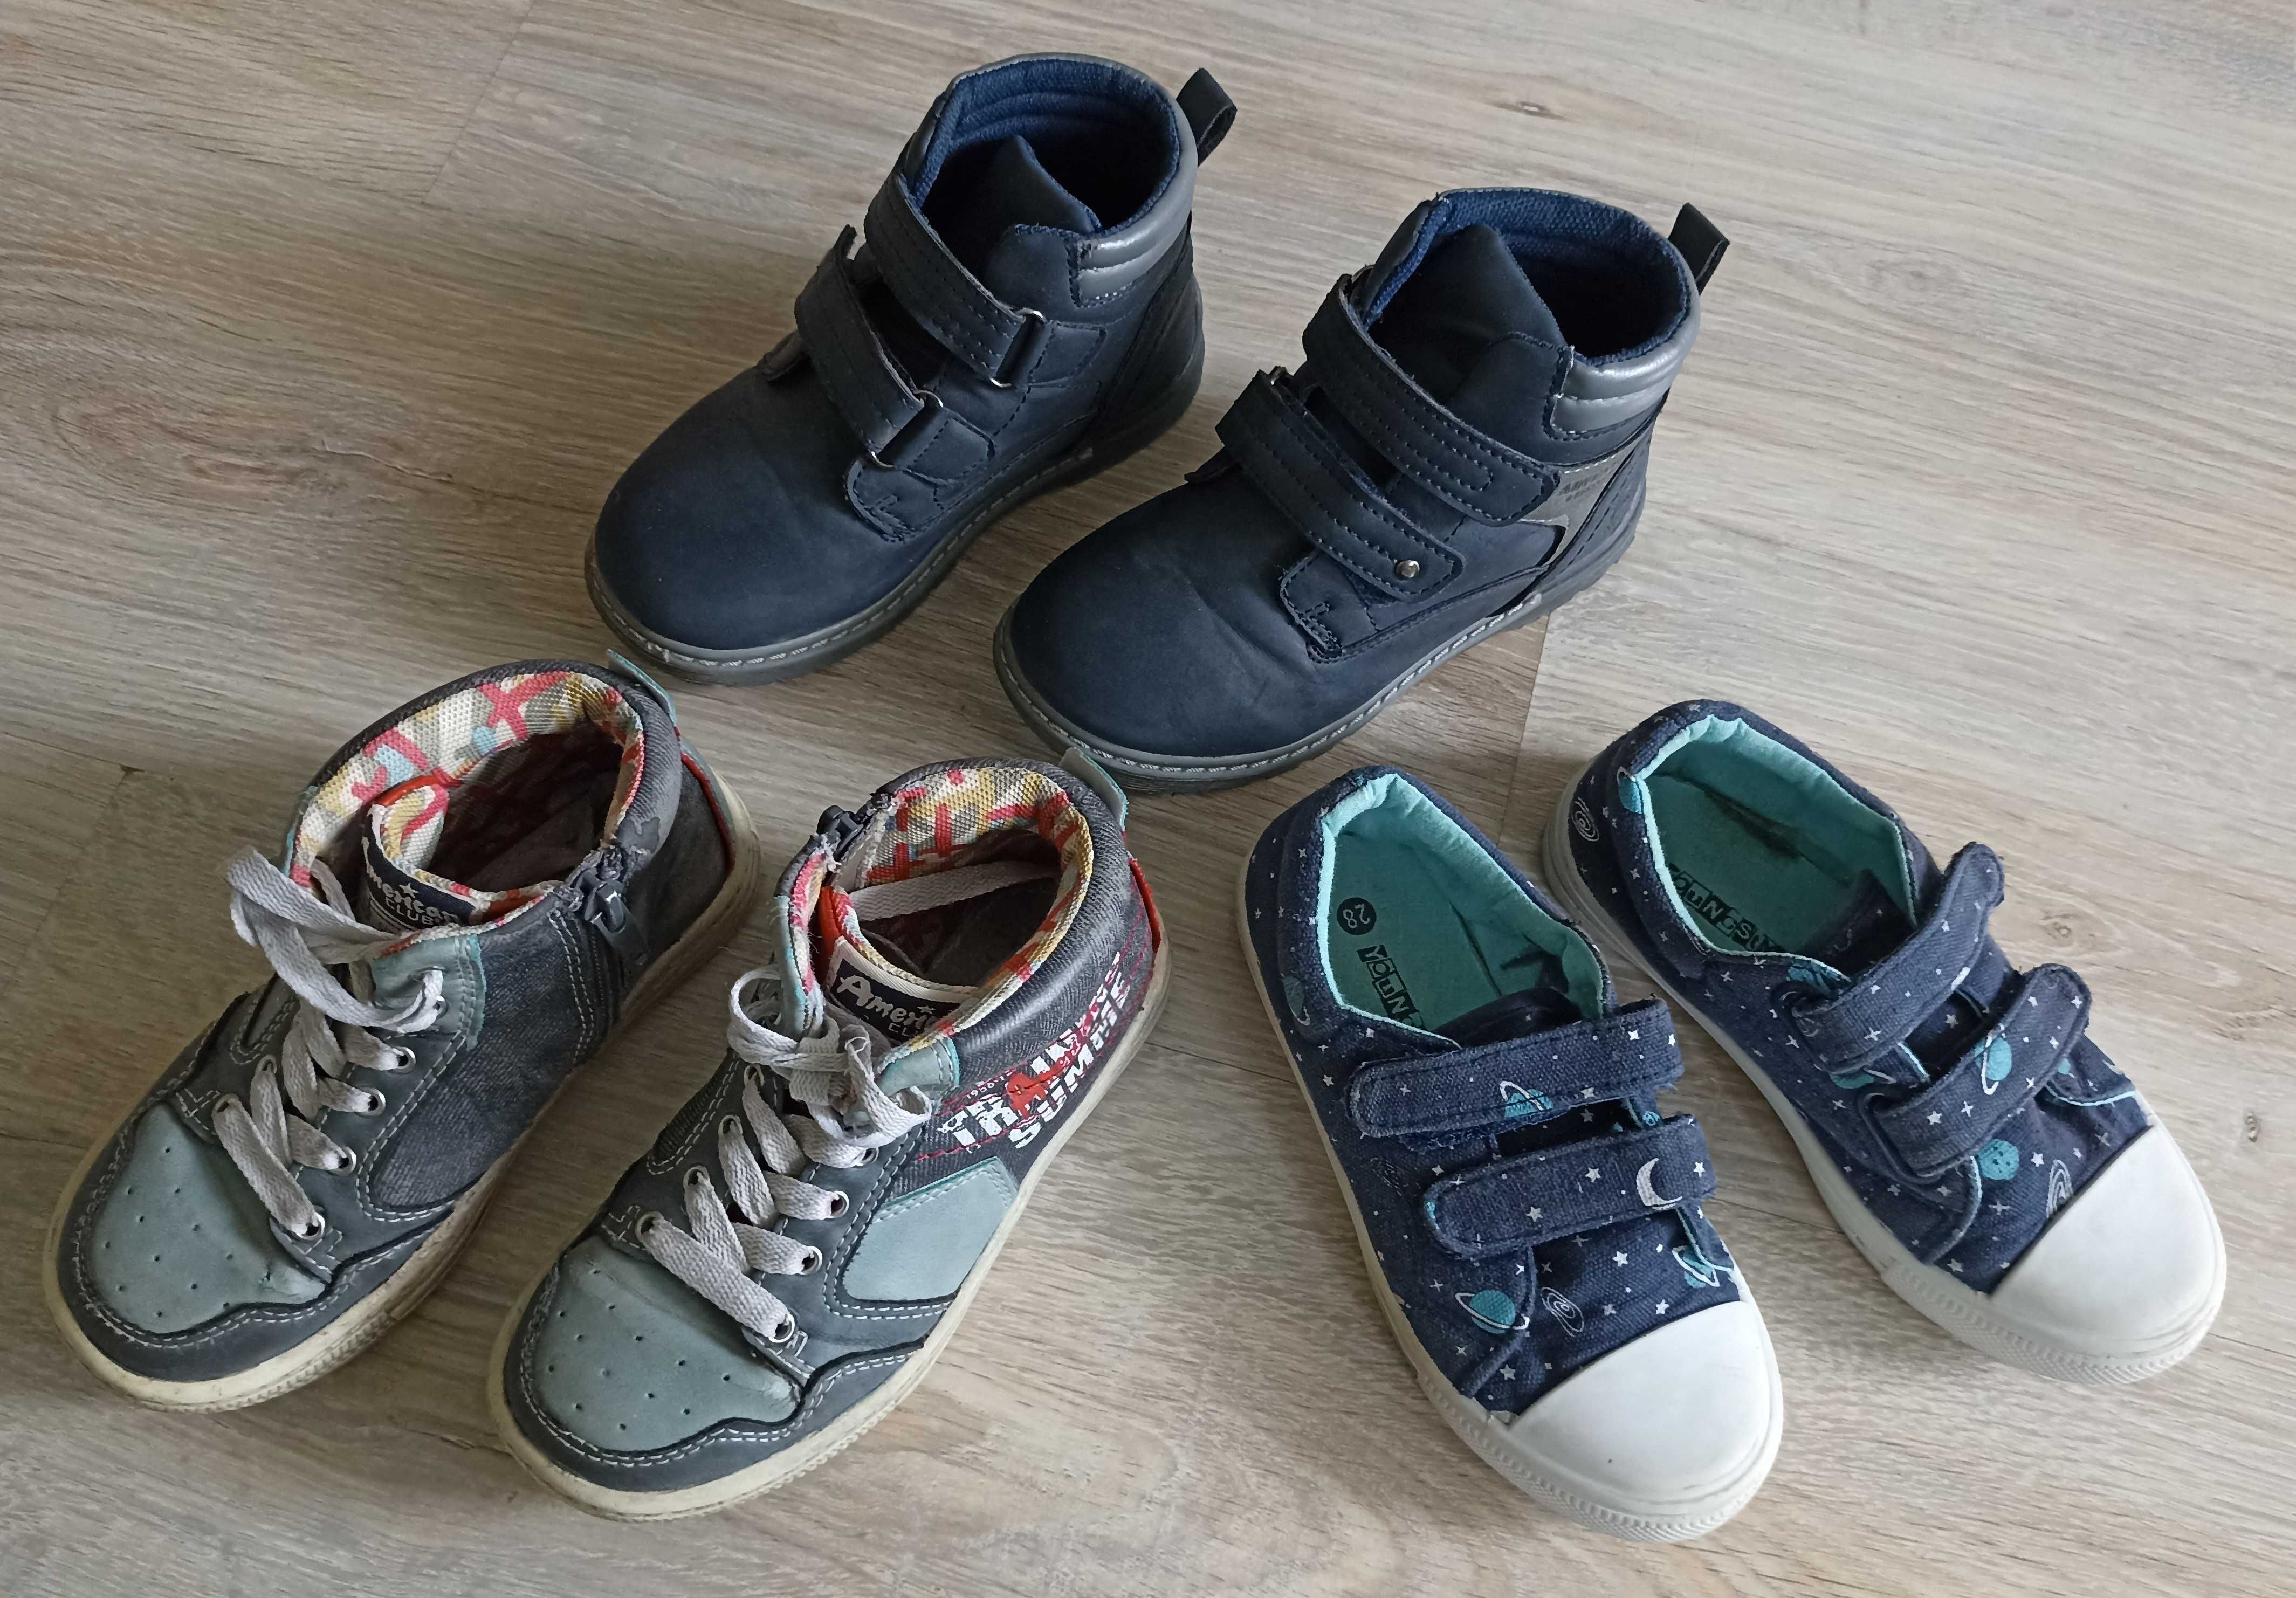 Buty dla chłopca rozmiar 28: zimowe, pantofle, przejściowe - 4 pary